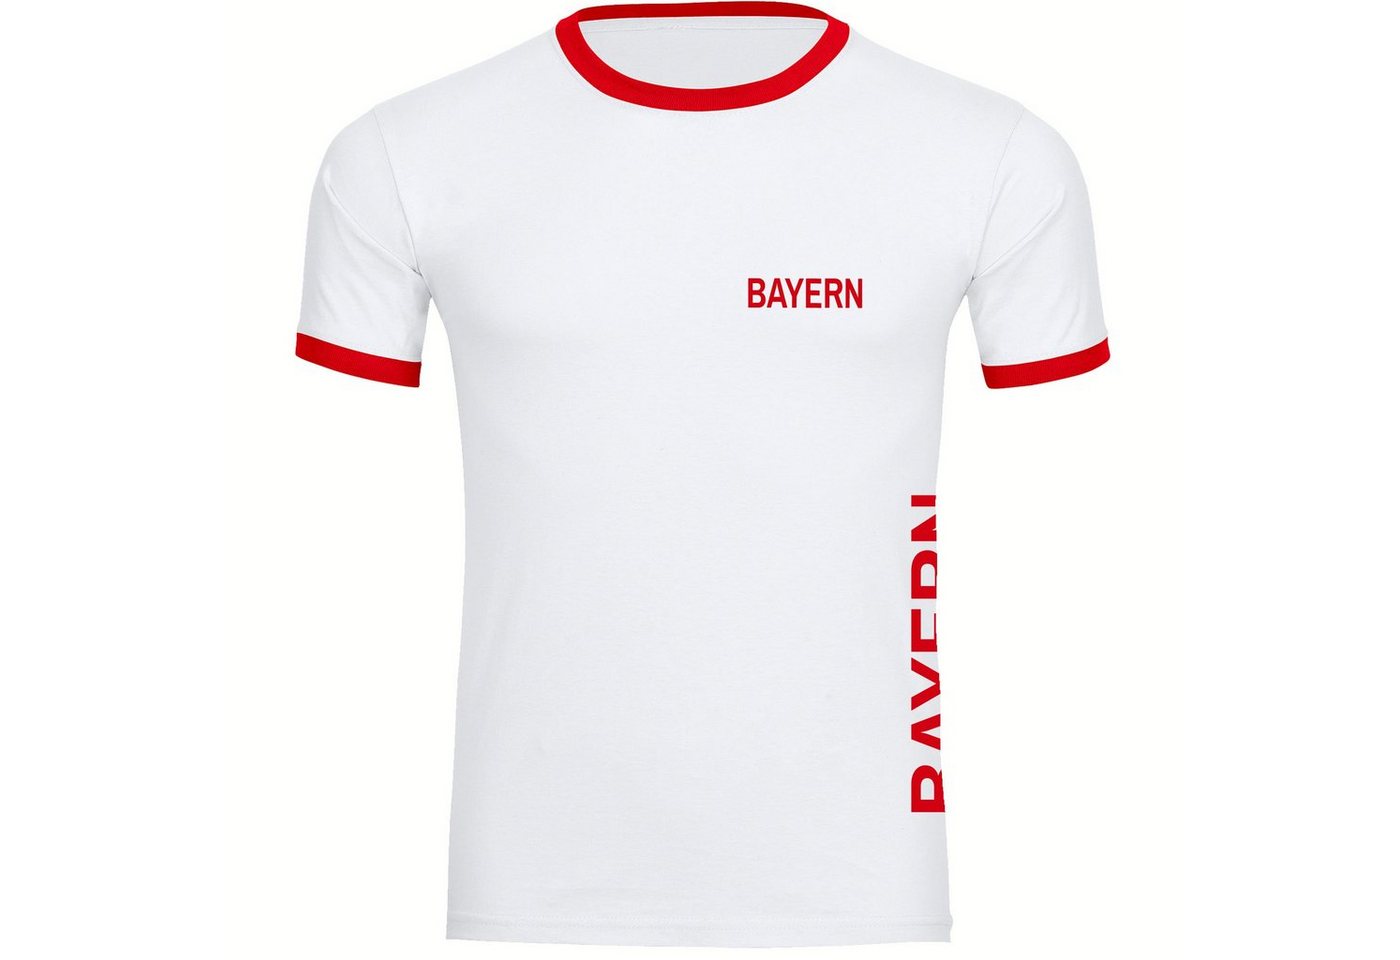 multifanshop T-Shirt Kontrast Bayern - Brust & Seite - Männer von multifanshop